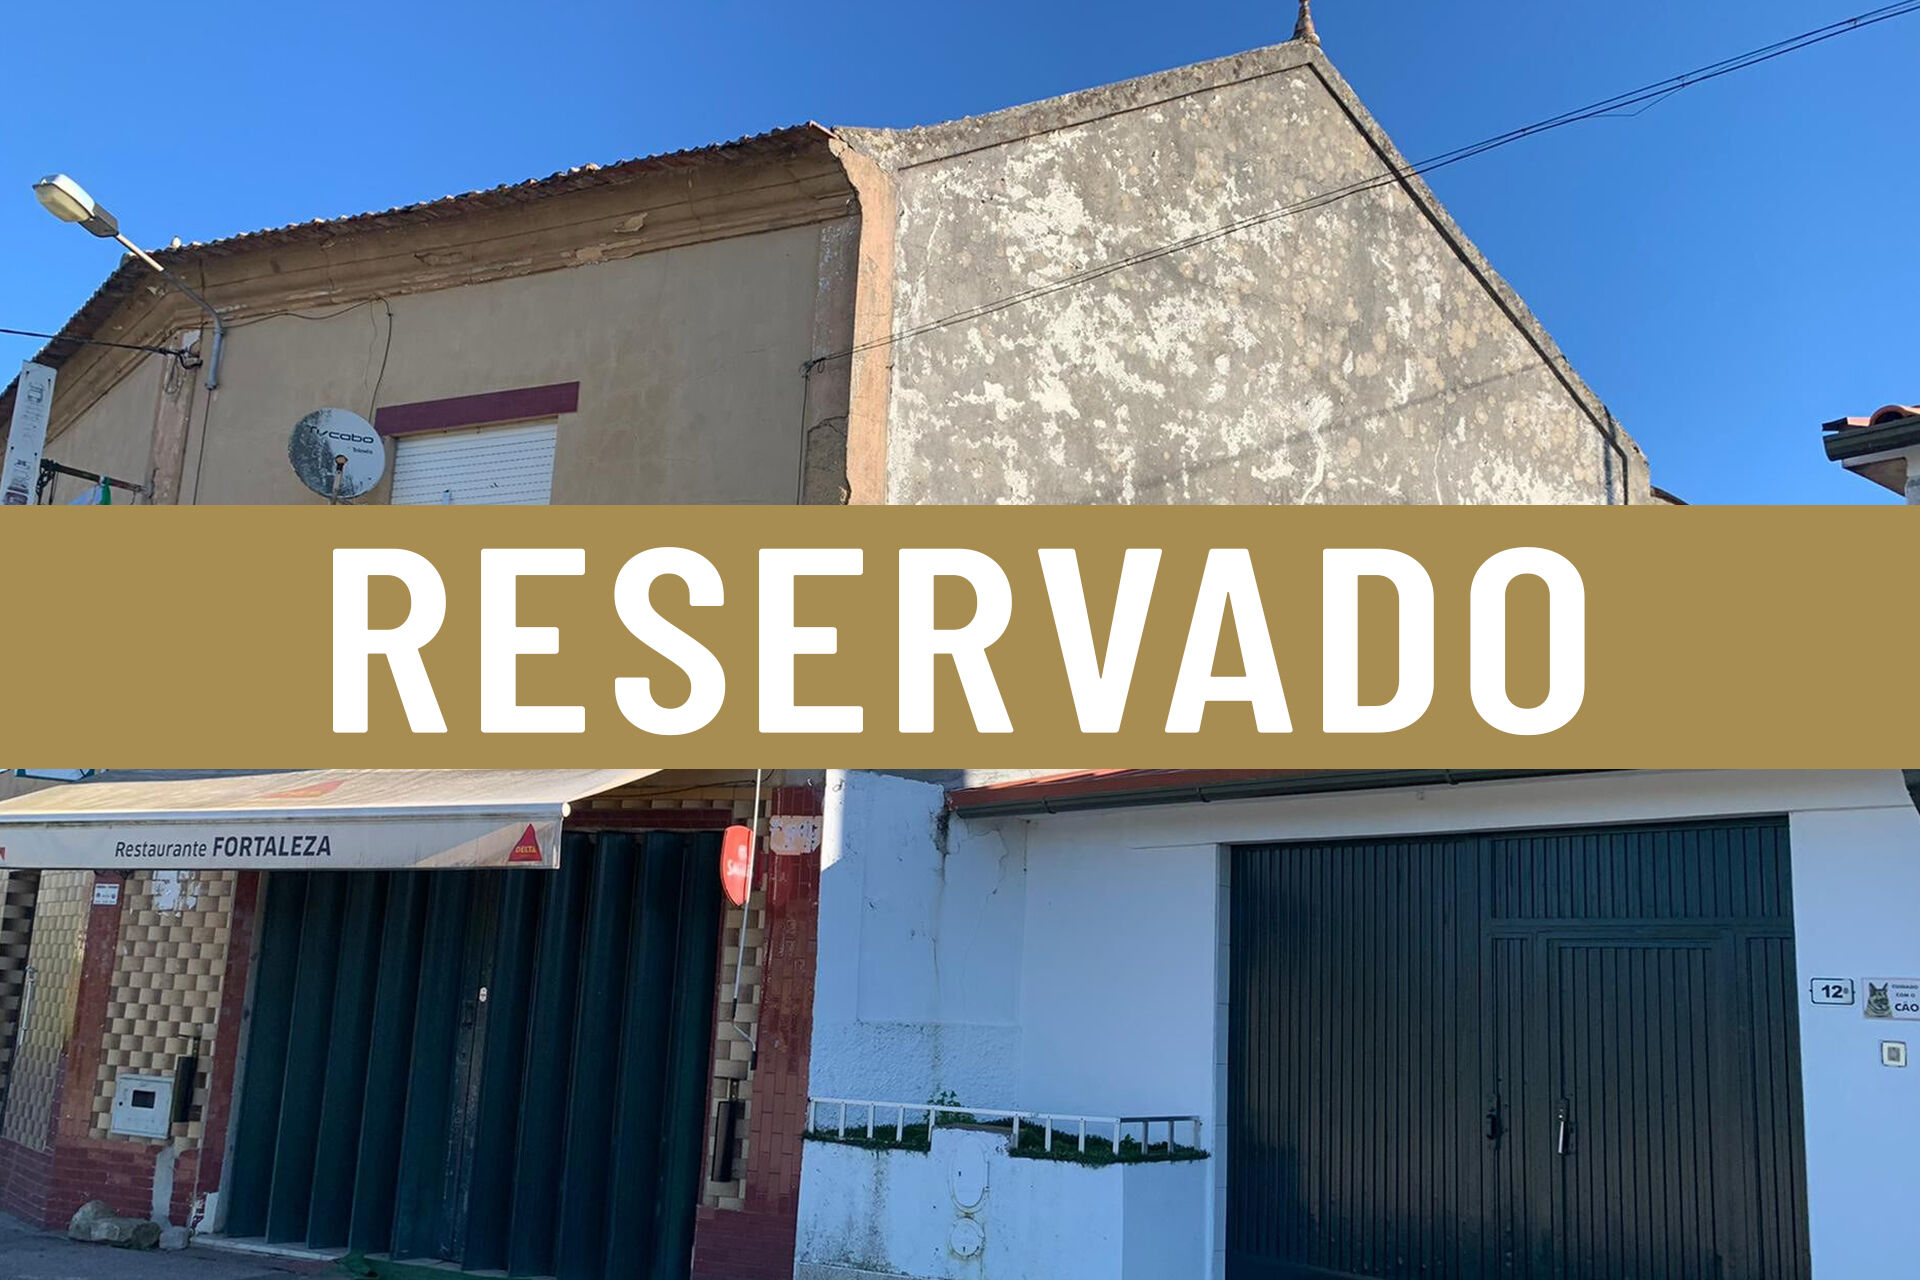 RESERVADO / São João de Loure, Albergaria-a-Velha, Aveiro: Casa com cerca de 6000 m2 de terreno, diversos anexos e restaurante arrendado